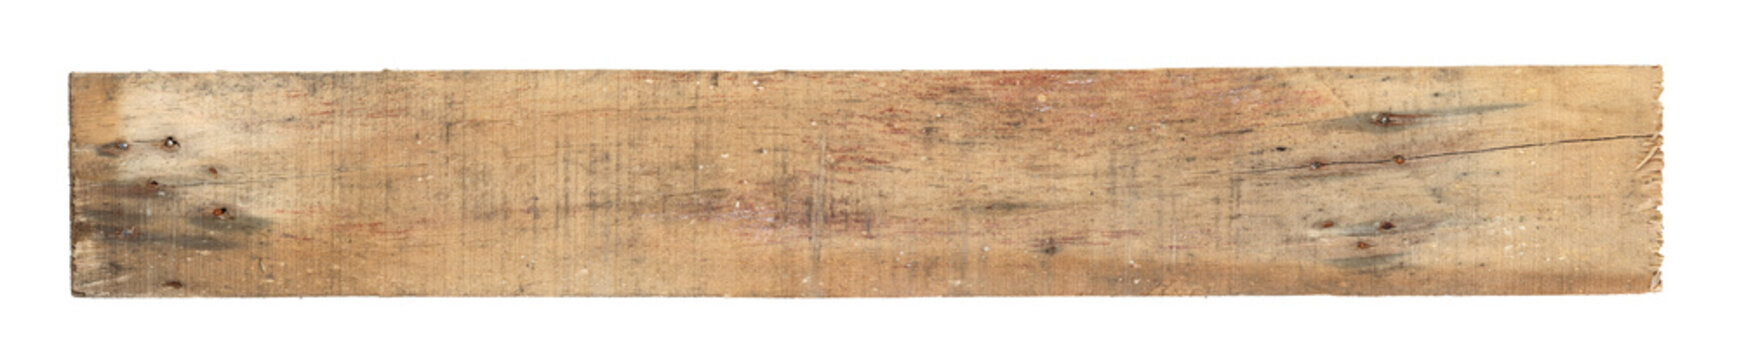 Fototapeta Old worn out wooden board